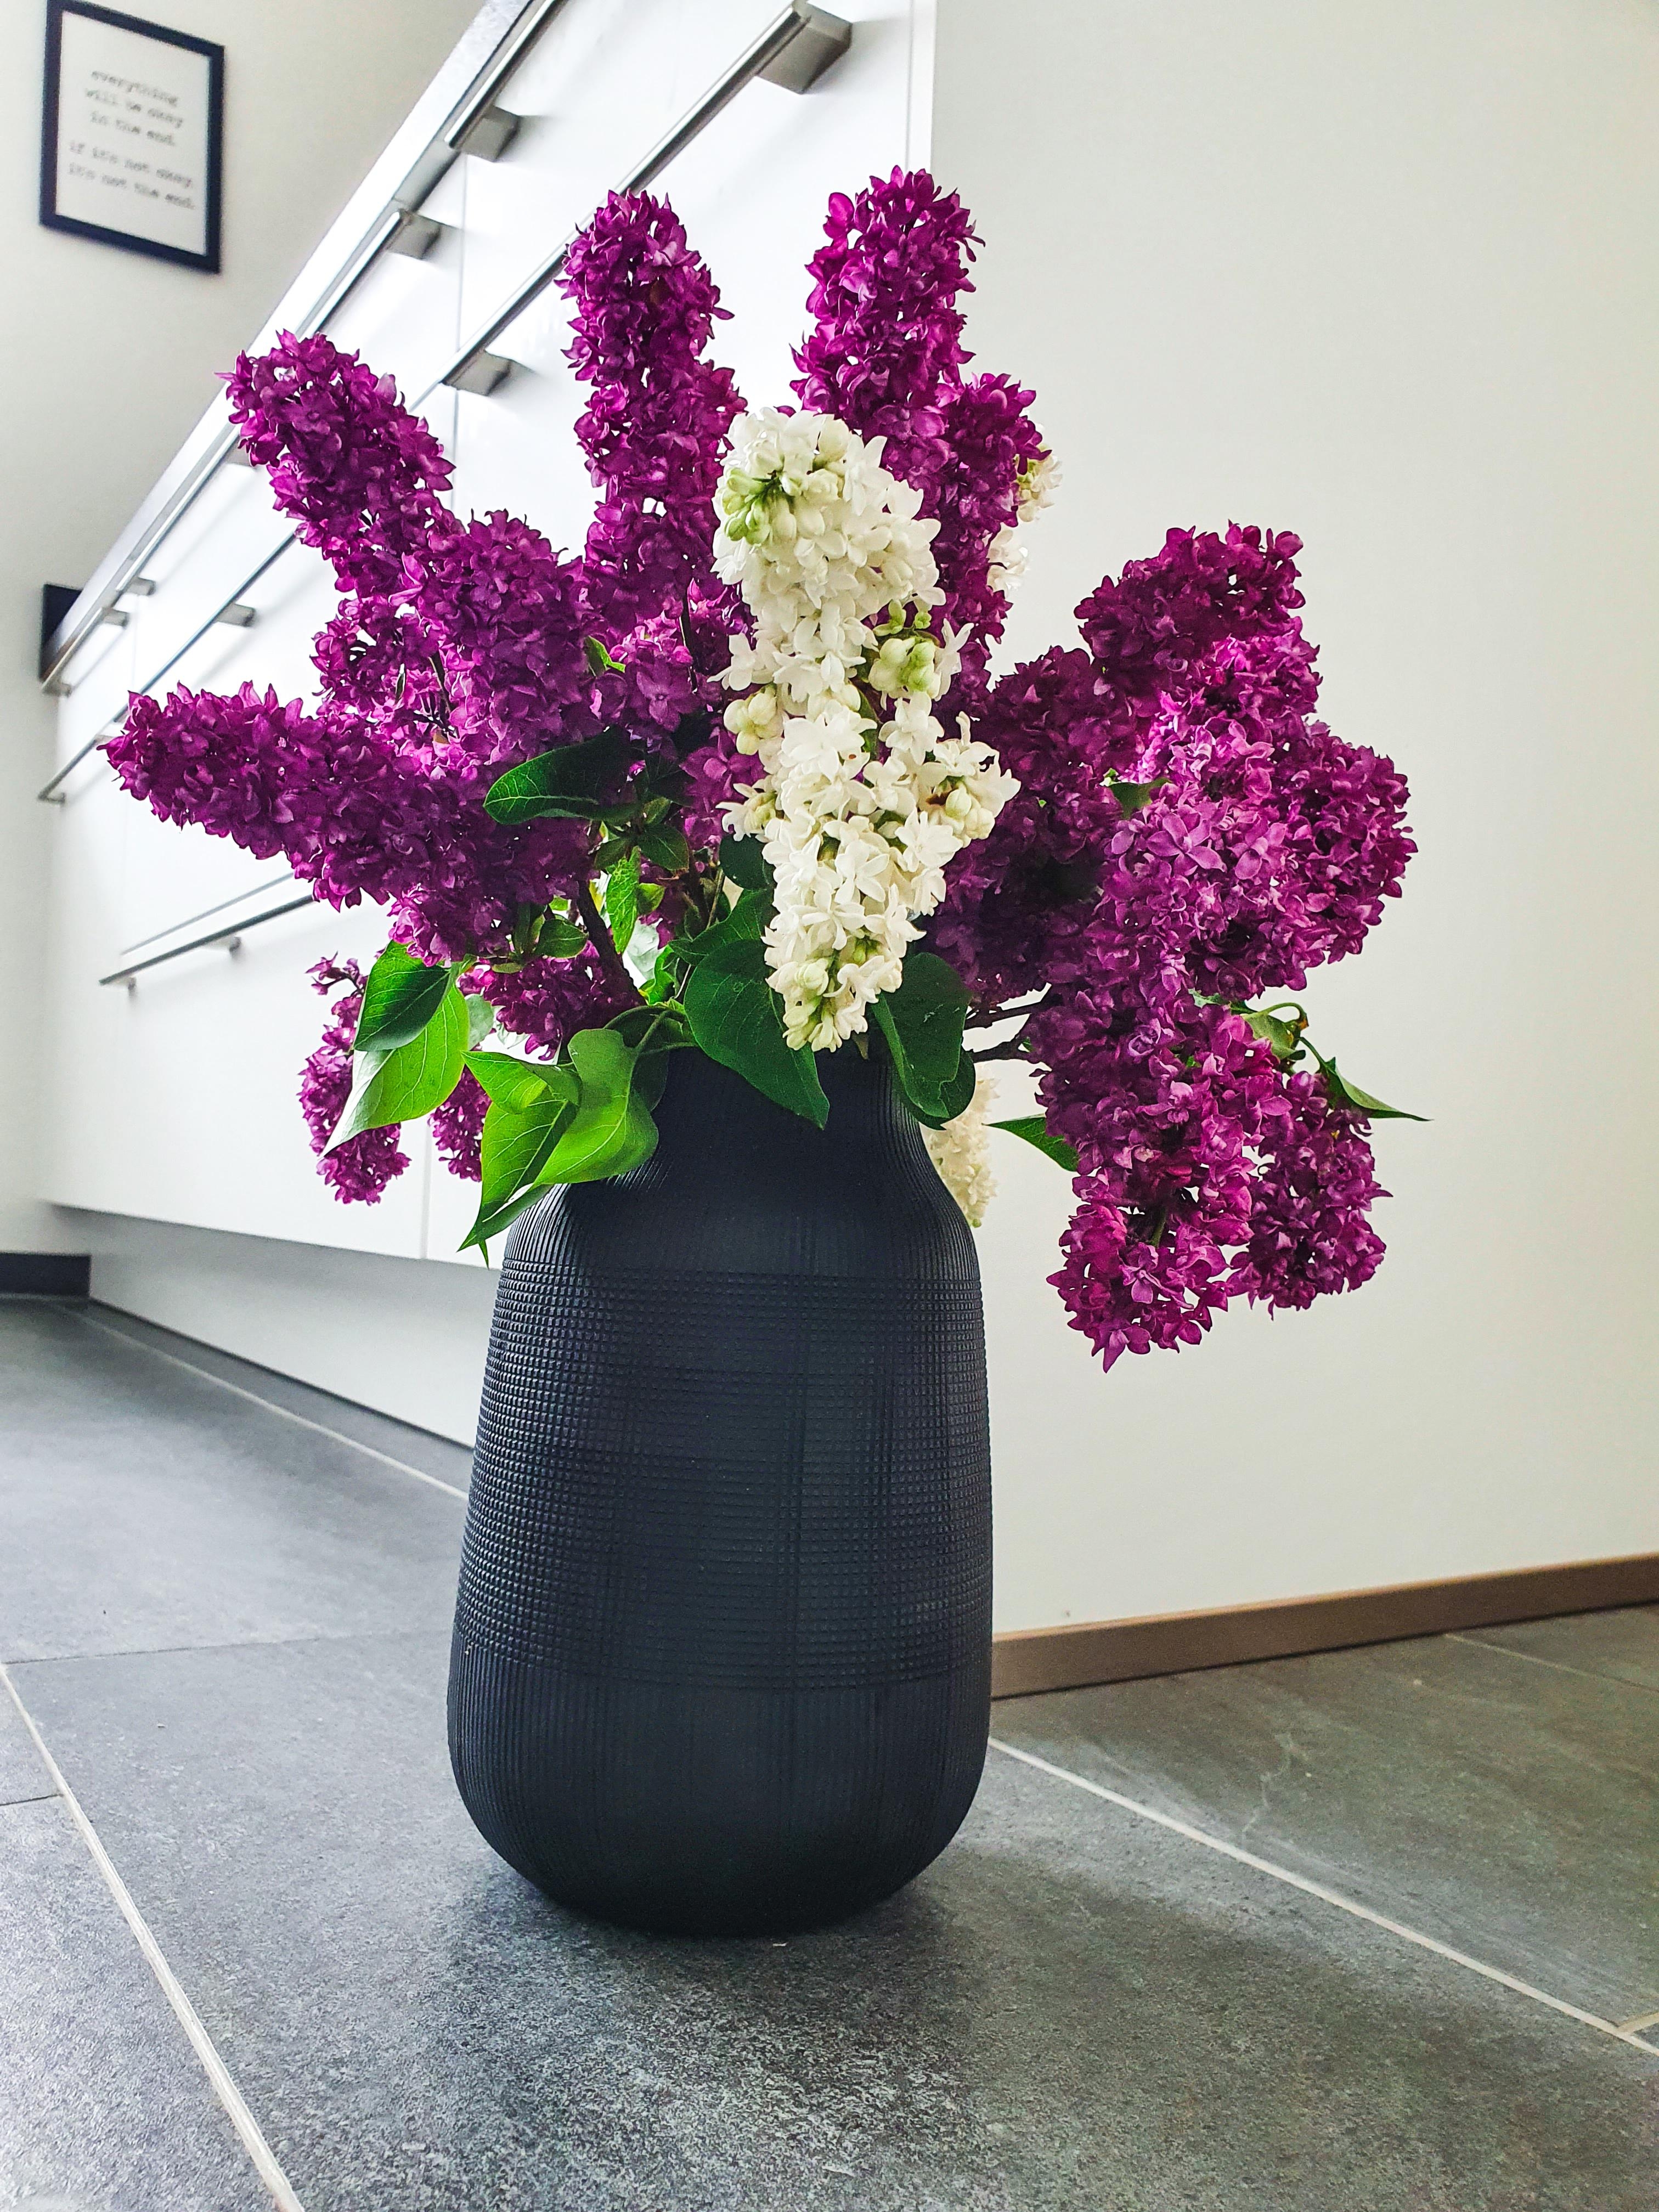 Schöne Grüße zum Sonntag 🌸
#flowers #vasenliebe #flieder 😍